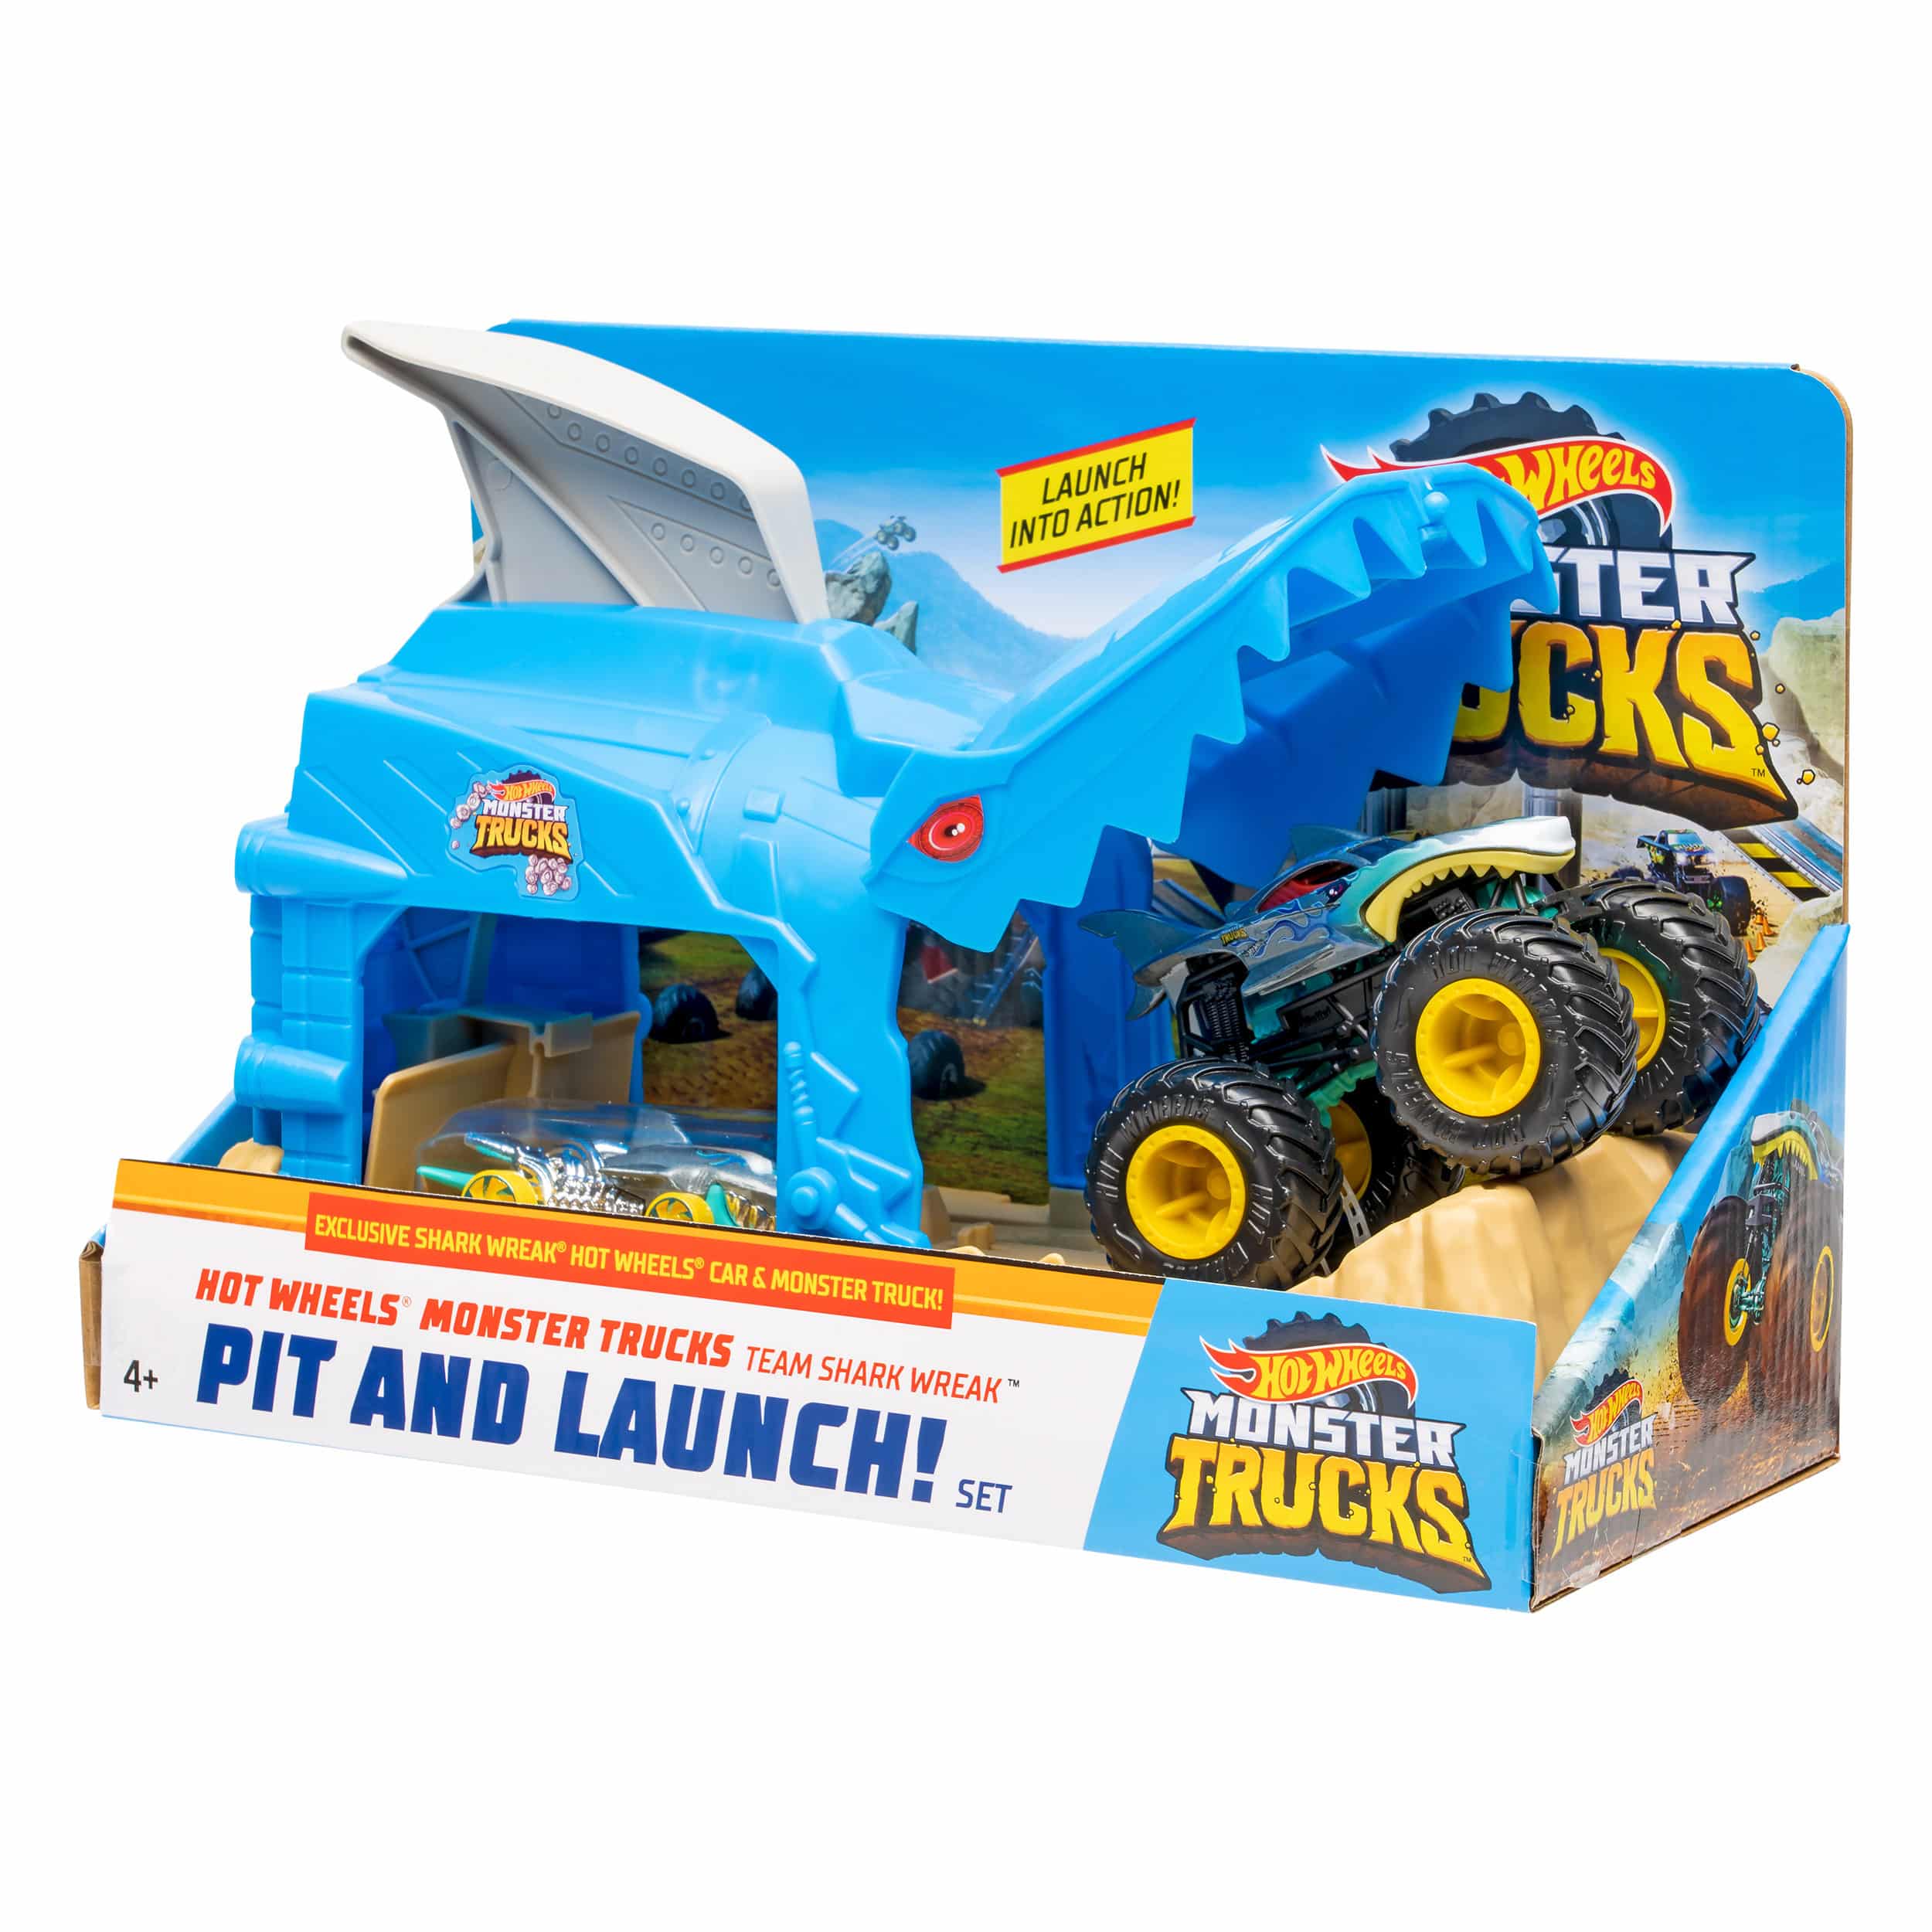 Hot Wheels - Monster Trucks - Pit & Launch Playset Assortment